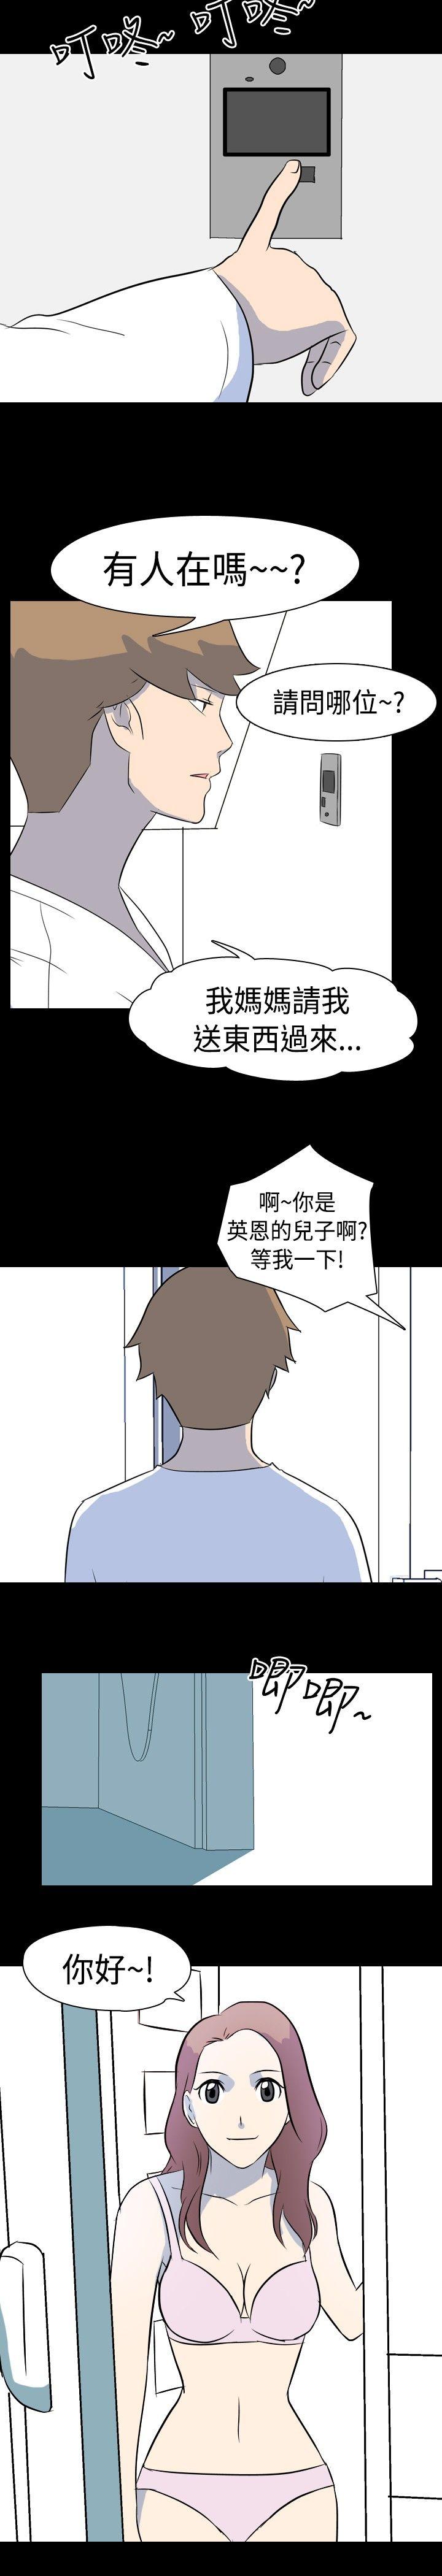 韩国污漫画 我的色色夜說 第8话-挡不住的桃花煞(上) 3